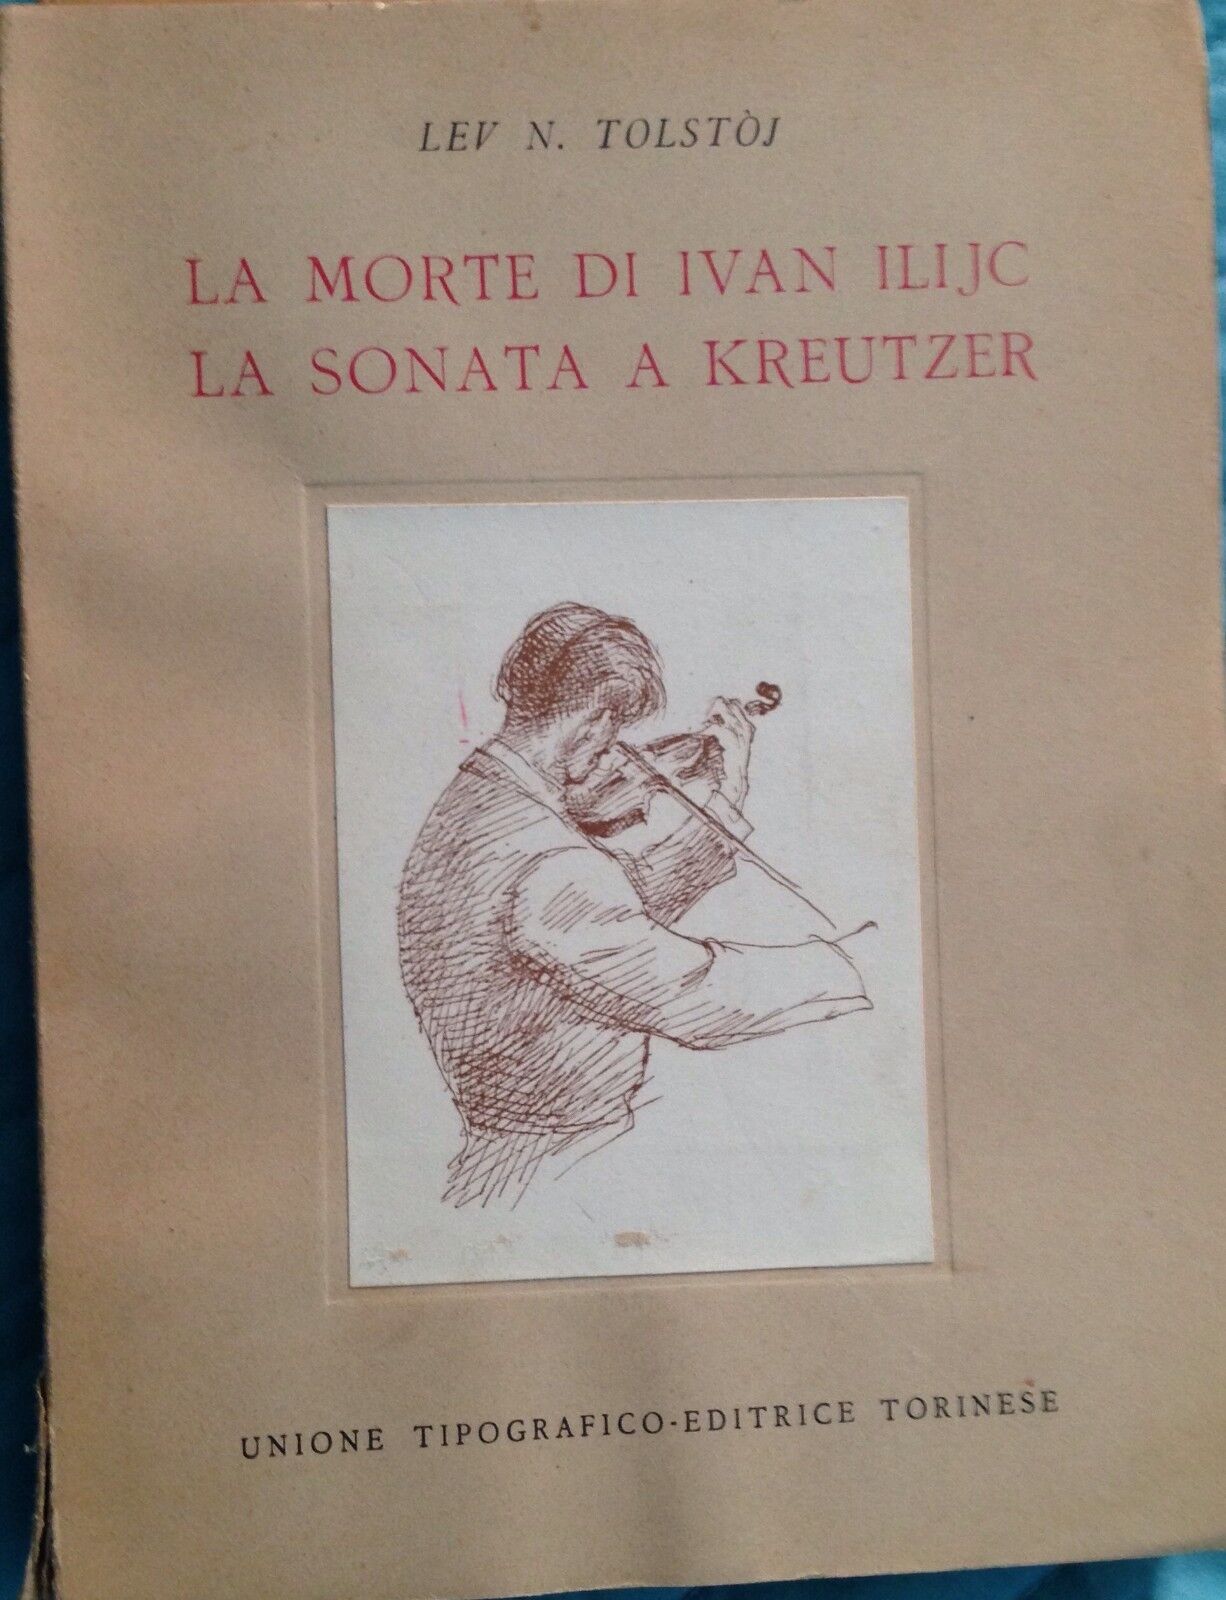 La morte di Ivan Ili Jc-La sonata a Kreutzer - Tolstoj - Torinese - 1956 - MP